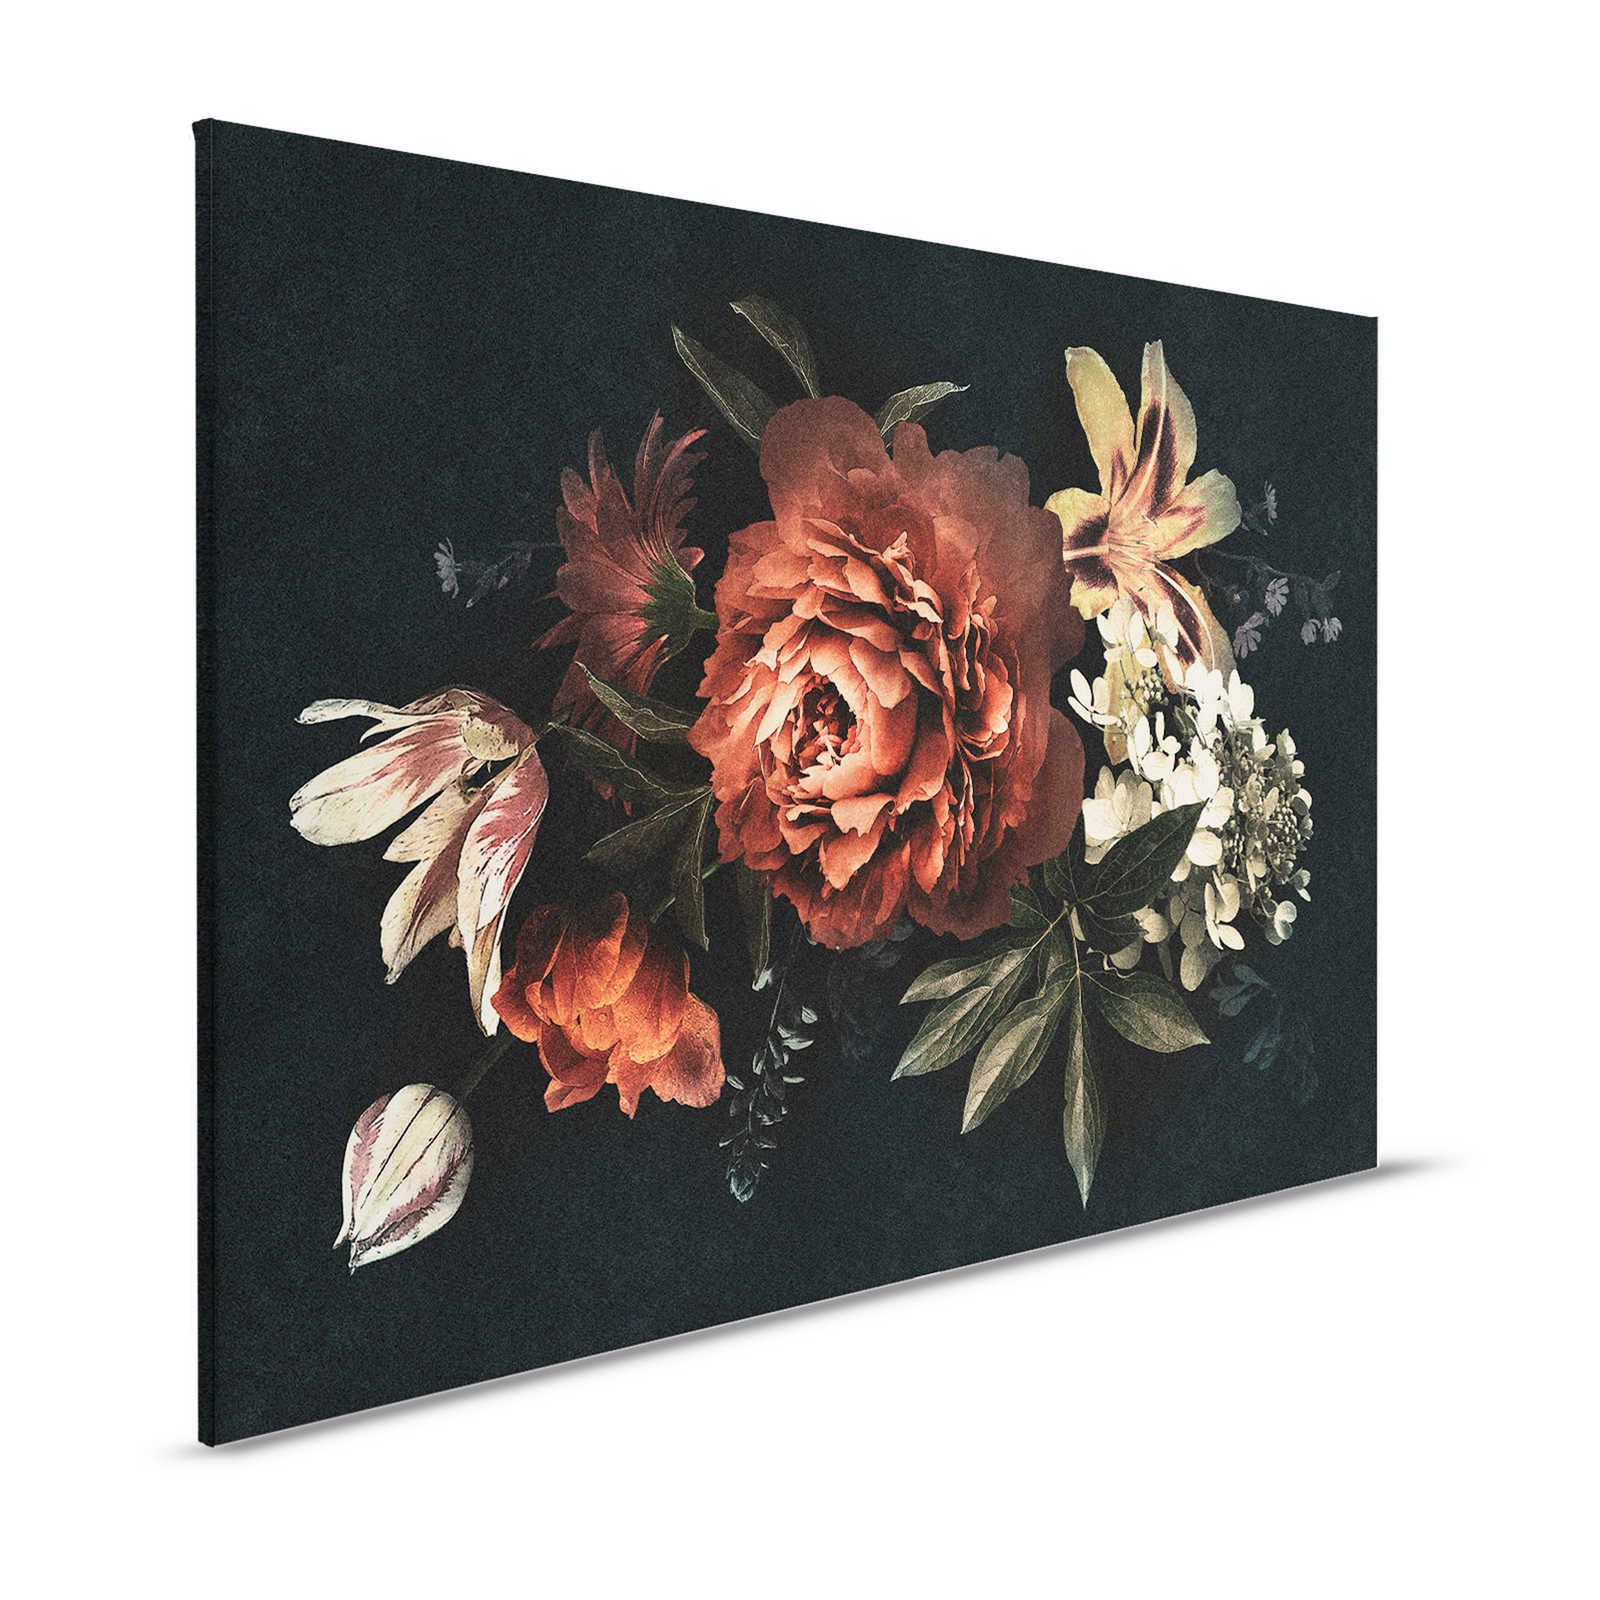 Drama queen 1 - Boeket bloemen canvas schilderij met donkere achtergrond - 1.20 m x 0.80 m
